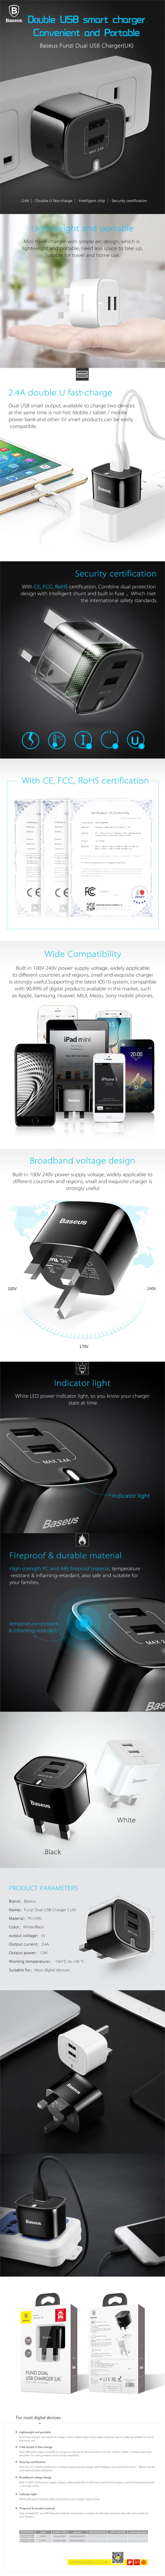 Зарядное устройство Baseus с двумя портами USB, штепсельная вилка Великобритании, USB, дорожное настенное зарядное устройство, адаптер, 5 В, 2,4 А, зарядное устройство для мобильного телефона для iPhone Xs, samsung, Xiaomi